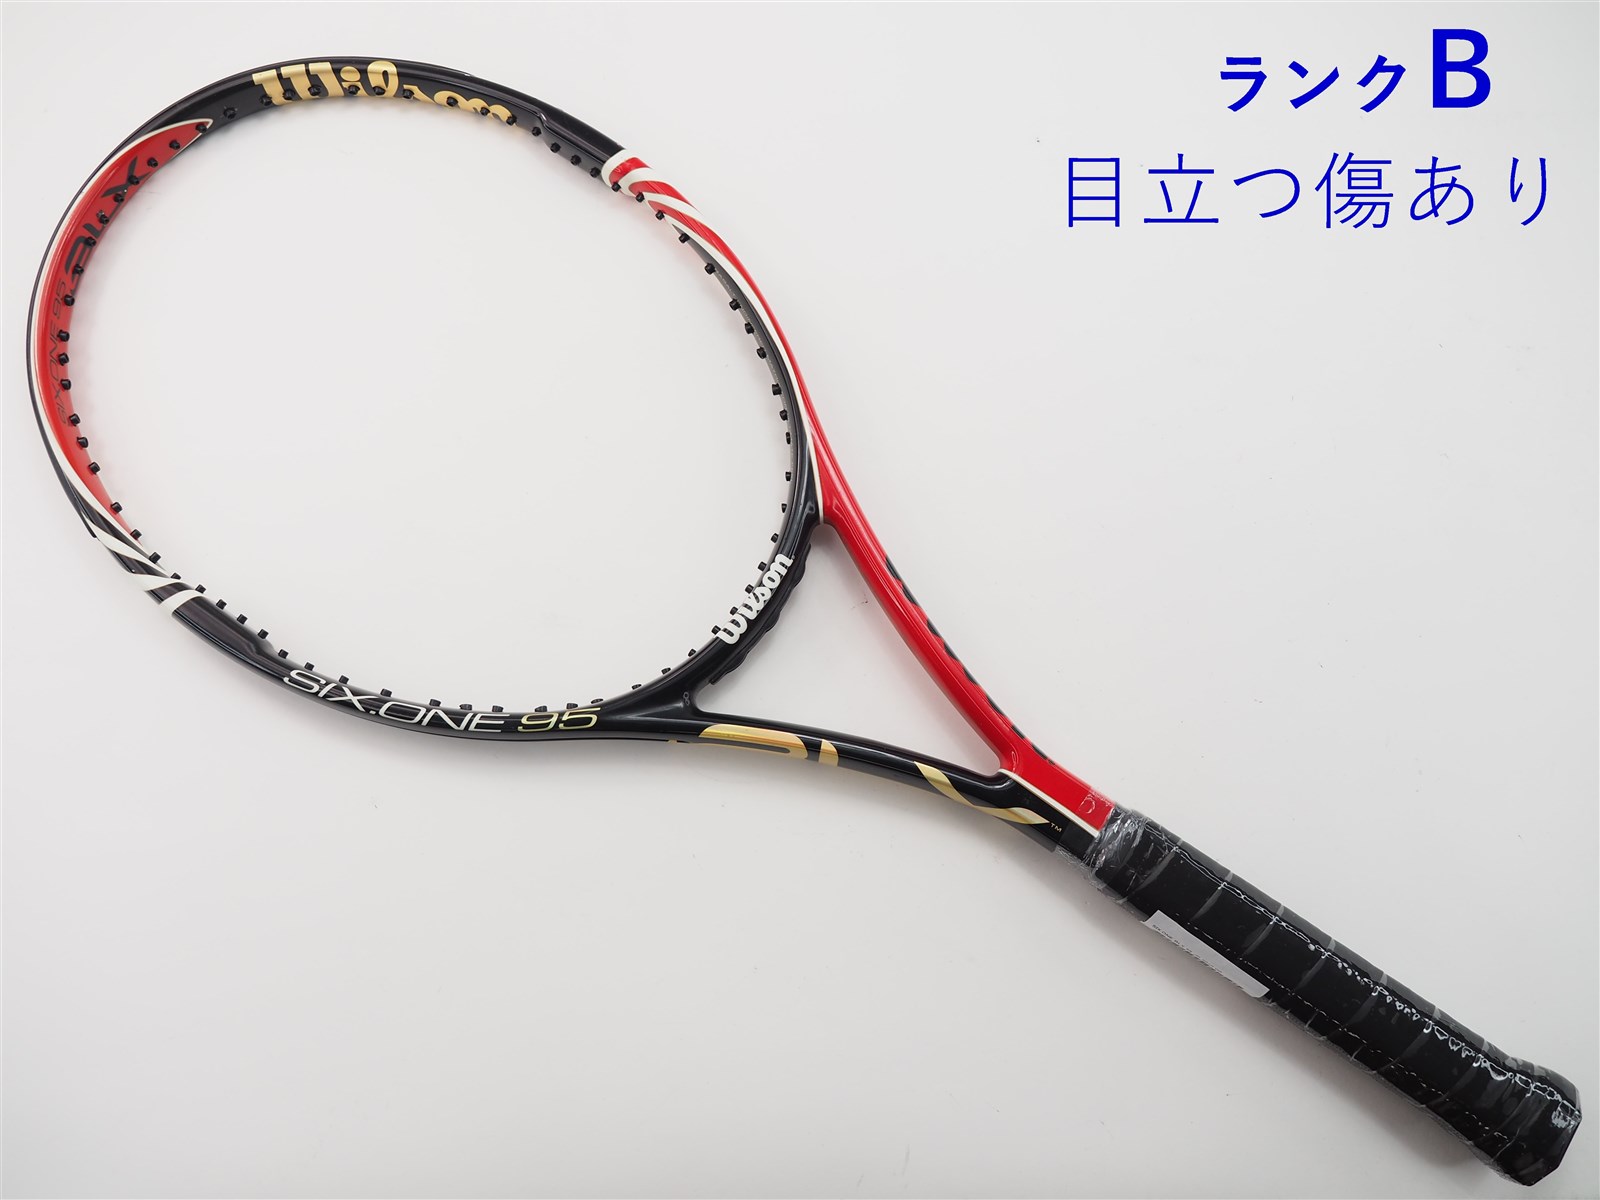 テニスラケット ウィルソン プロ オープン BLX 100 2010年モデル (G2